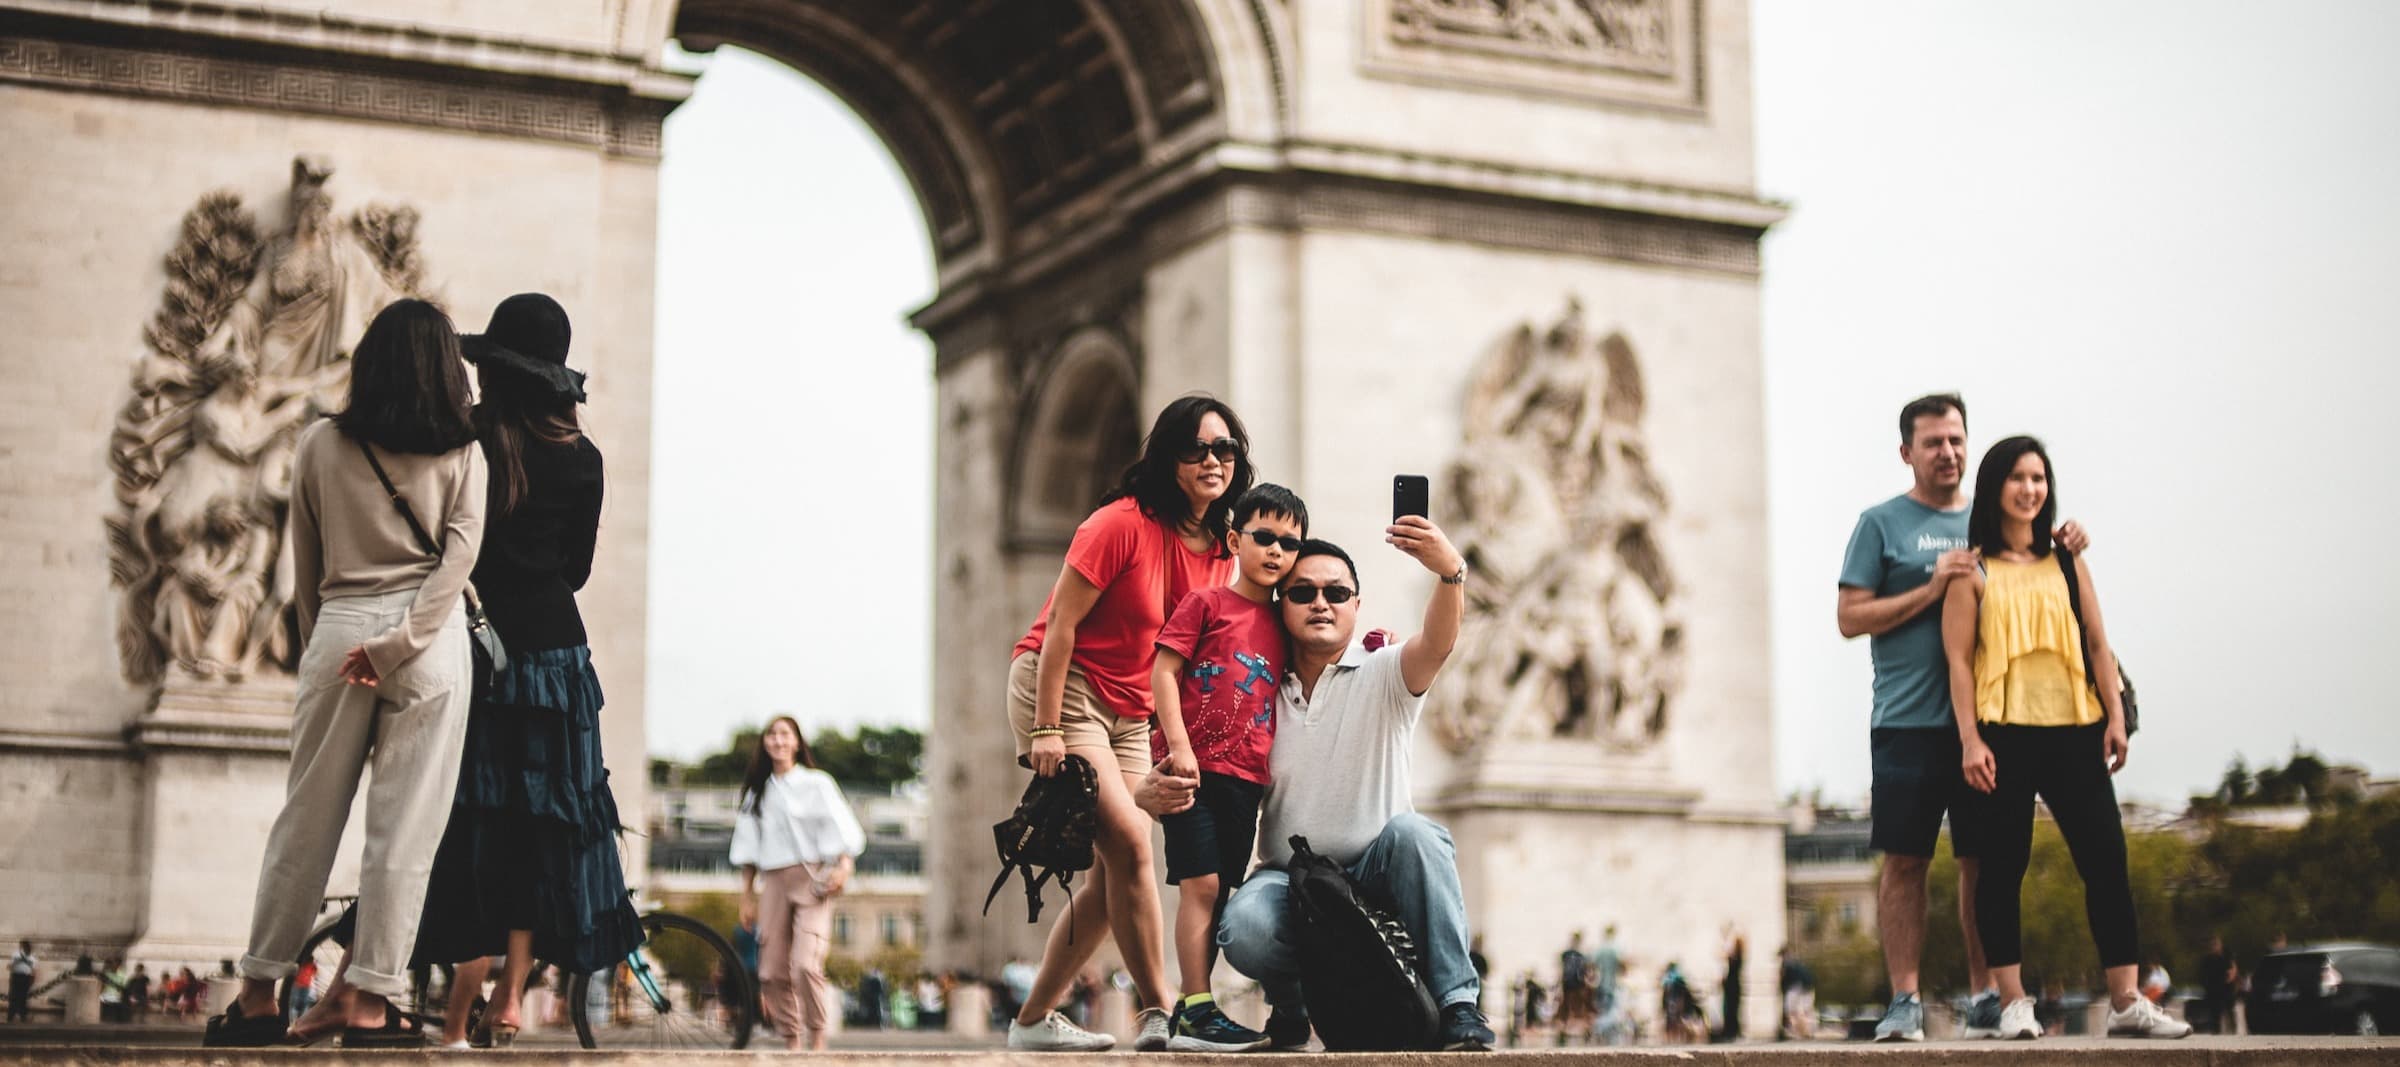 Фото новости: "Европейские страны начали зазывать туристов из Китая в соцсетях"